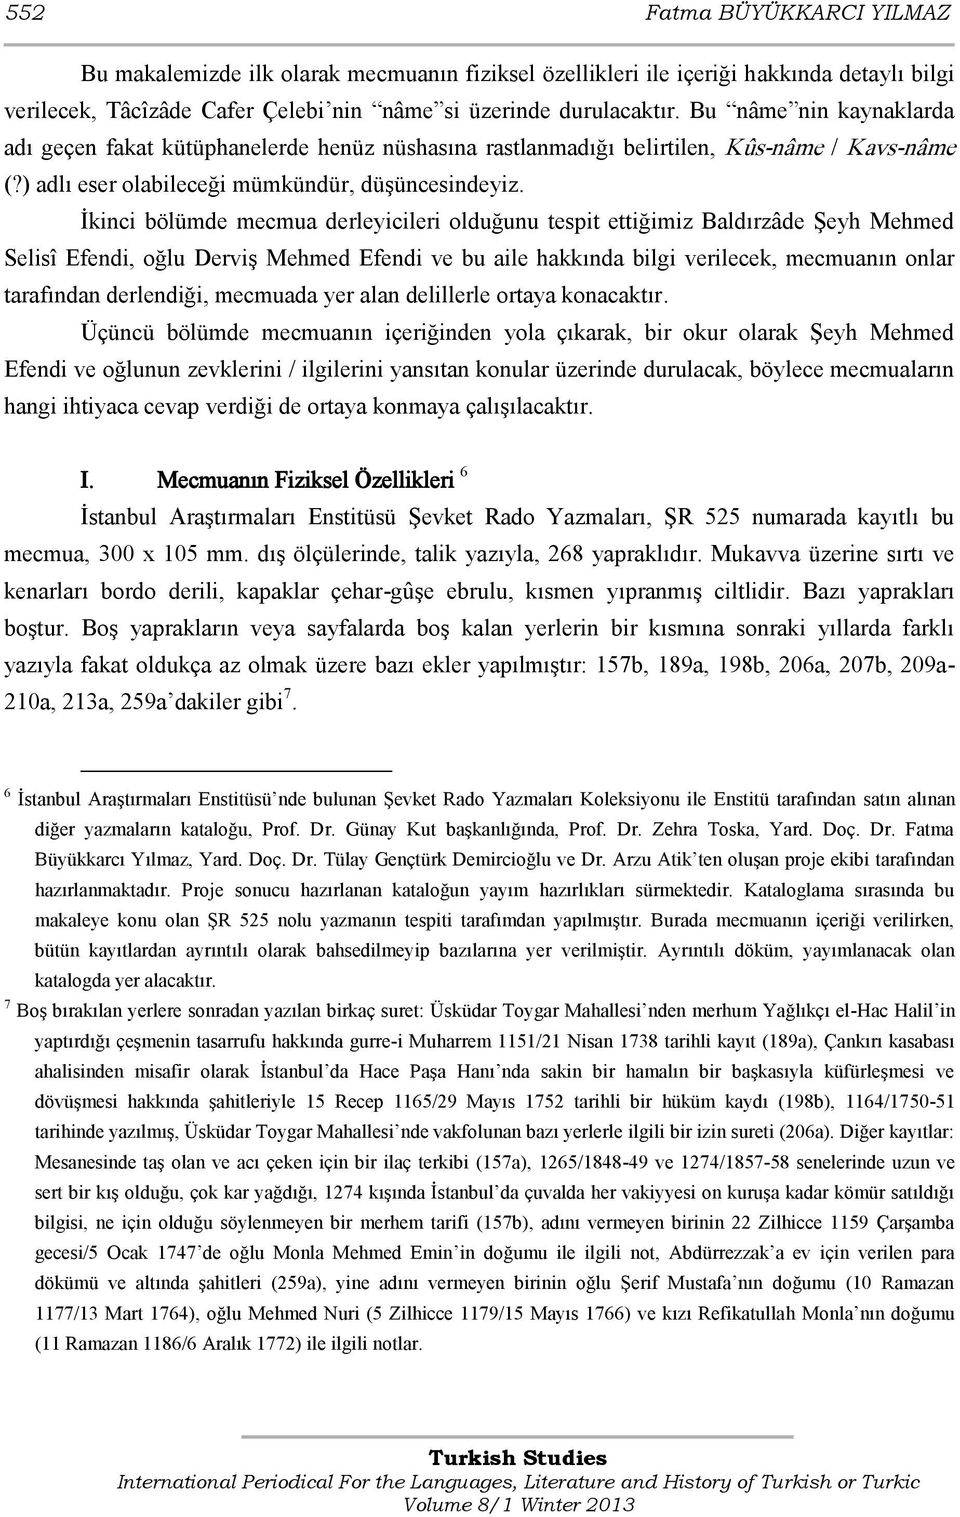 İkinci bölümde mecmua derleyicileri olduğunu tespit ettiğimiz Baldırzâde Şeyh Mehmed Selisî Efendi, oğlu Derviş Mehmed Efendi ve bu aile hakkında bilgi verilecek, mecmuanın onlar tarafından